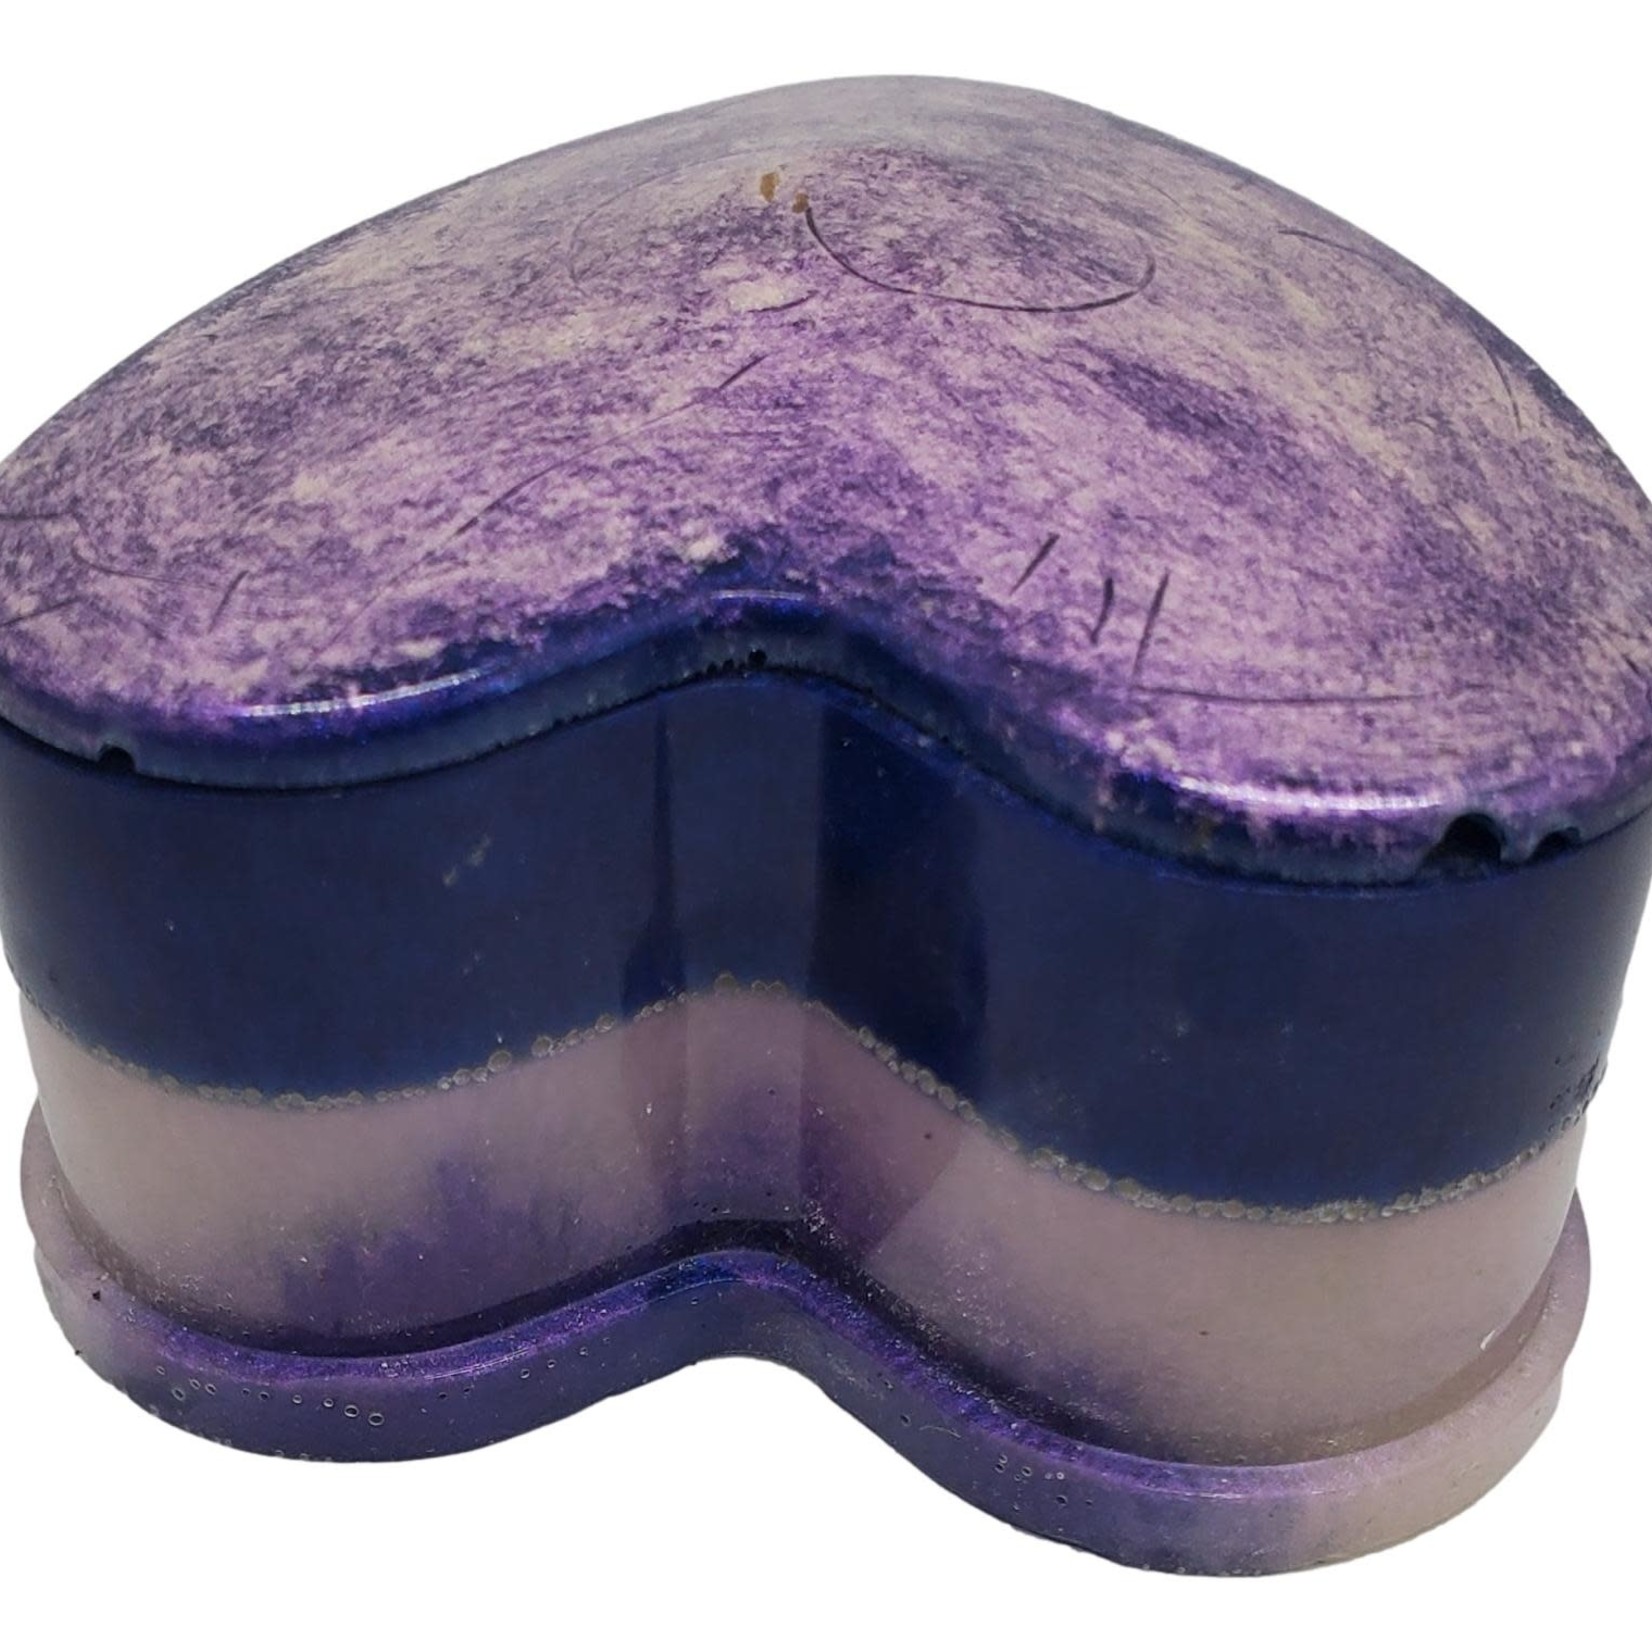 East Coast Sirens Purple & Lavender Heart Trinket Box